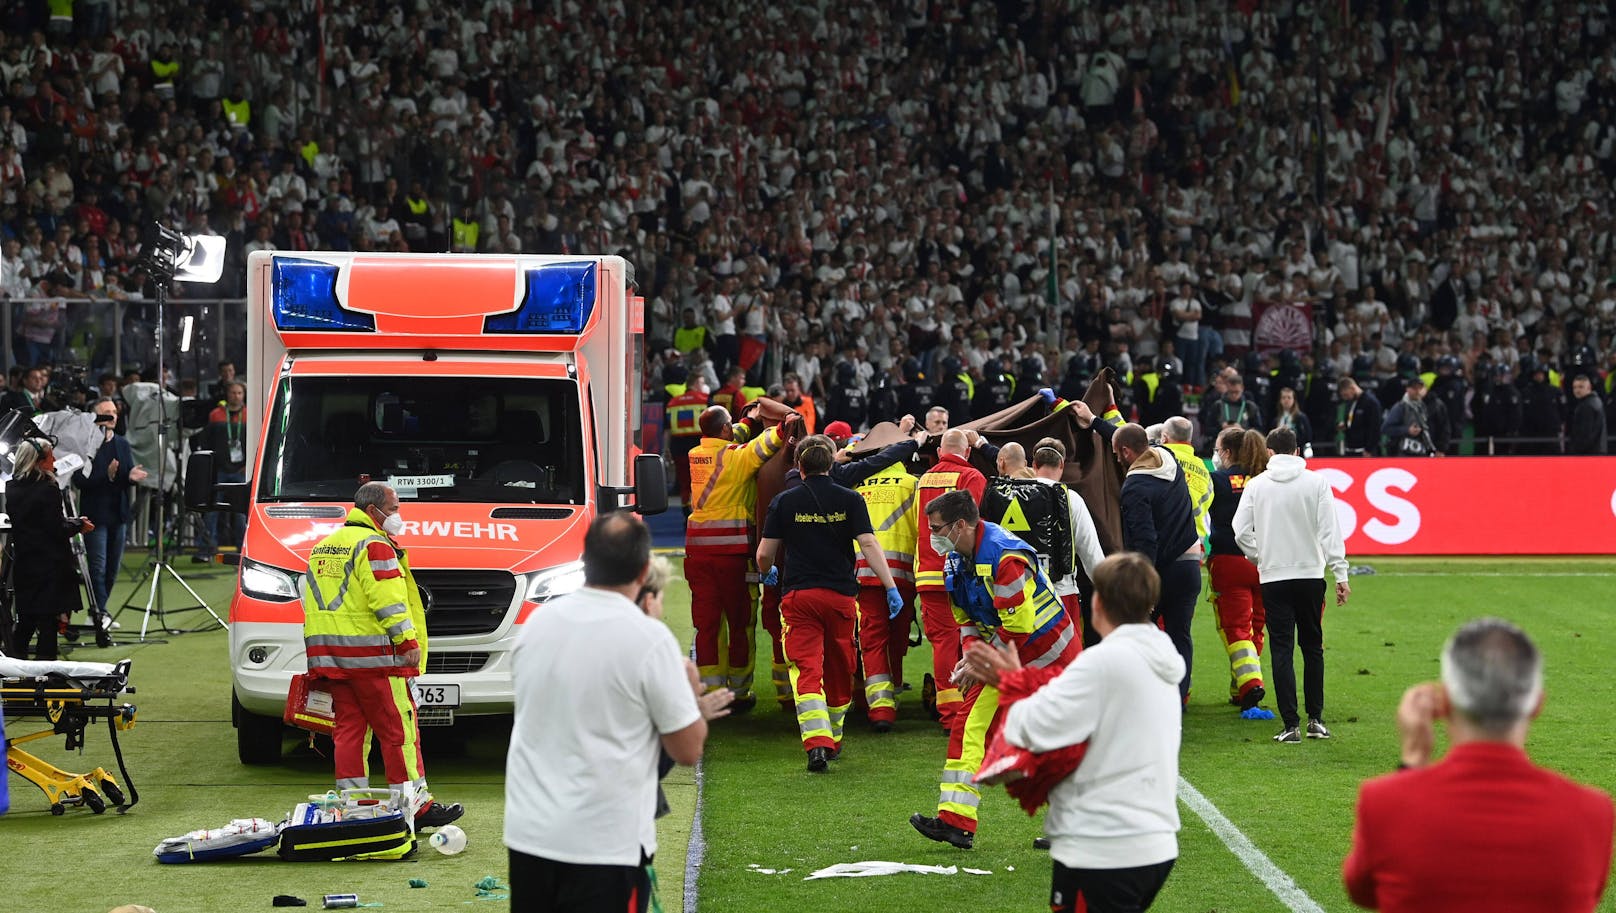 Unmittelbar nach dem DFB-Pokalfinale ist es zu einem medizinischen Notfall gekommen. 